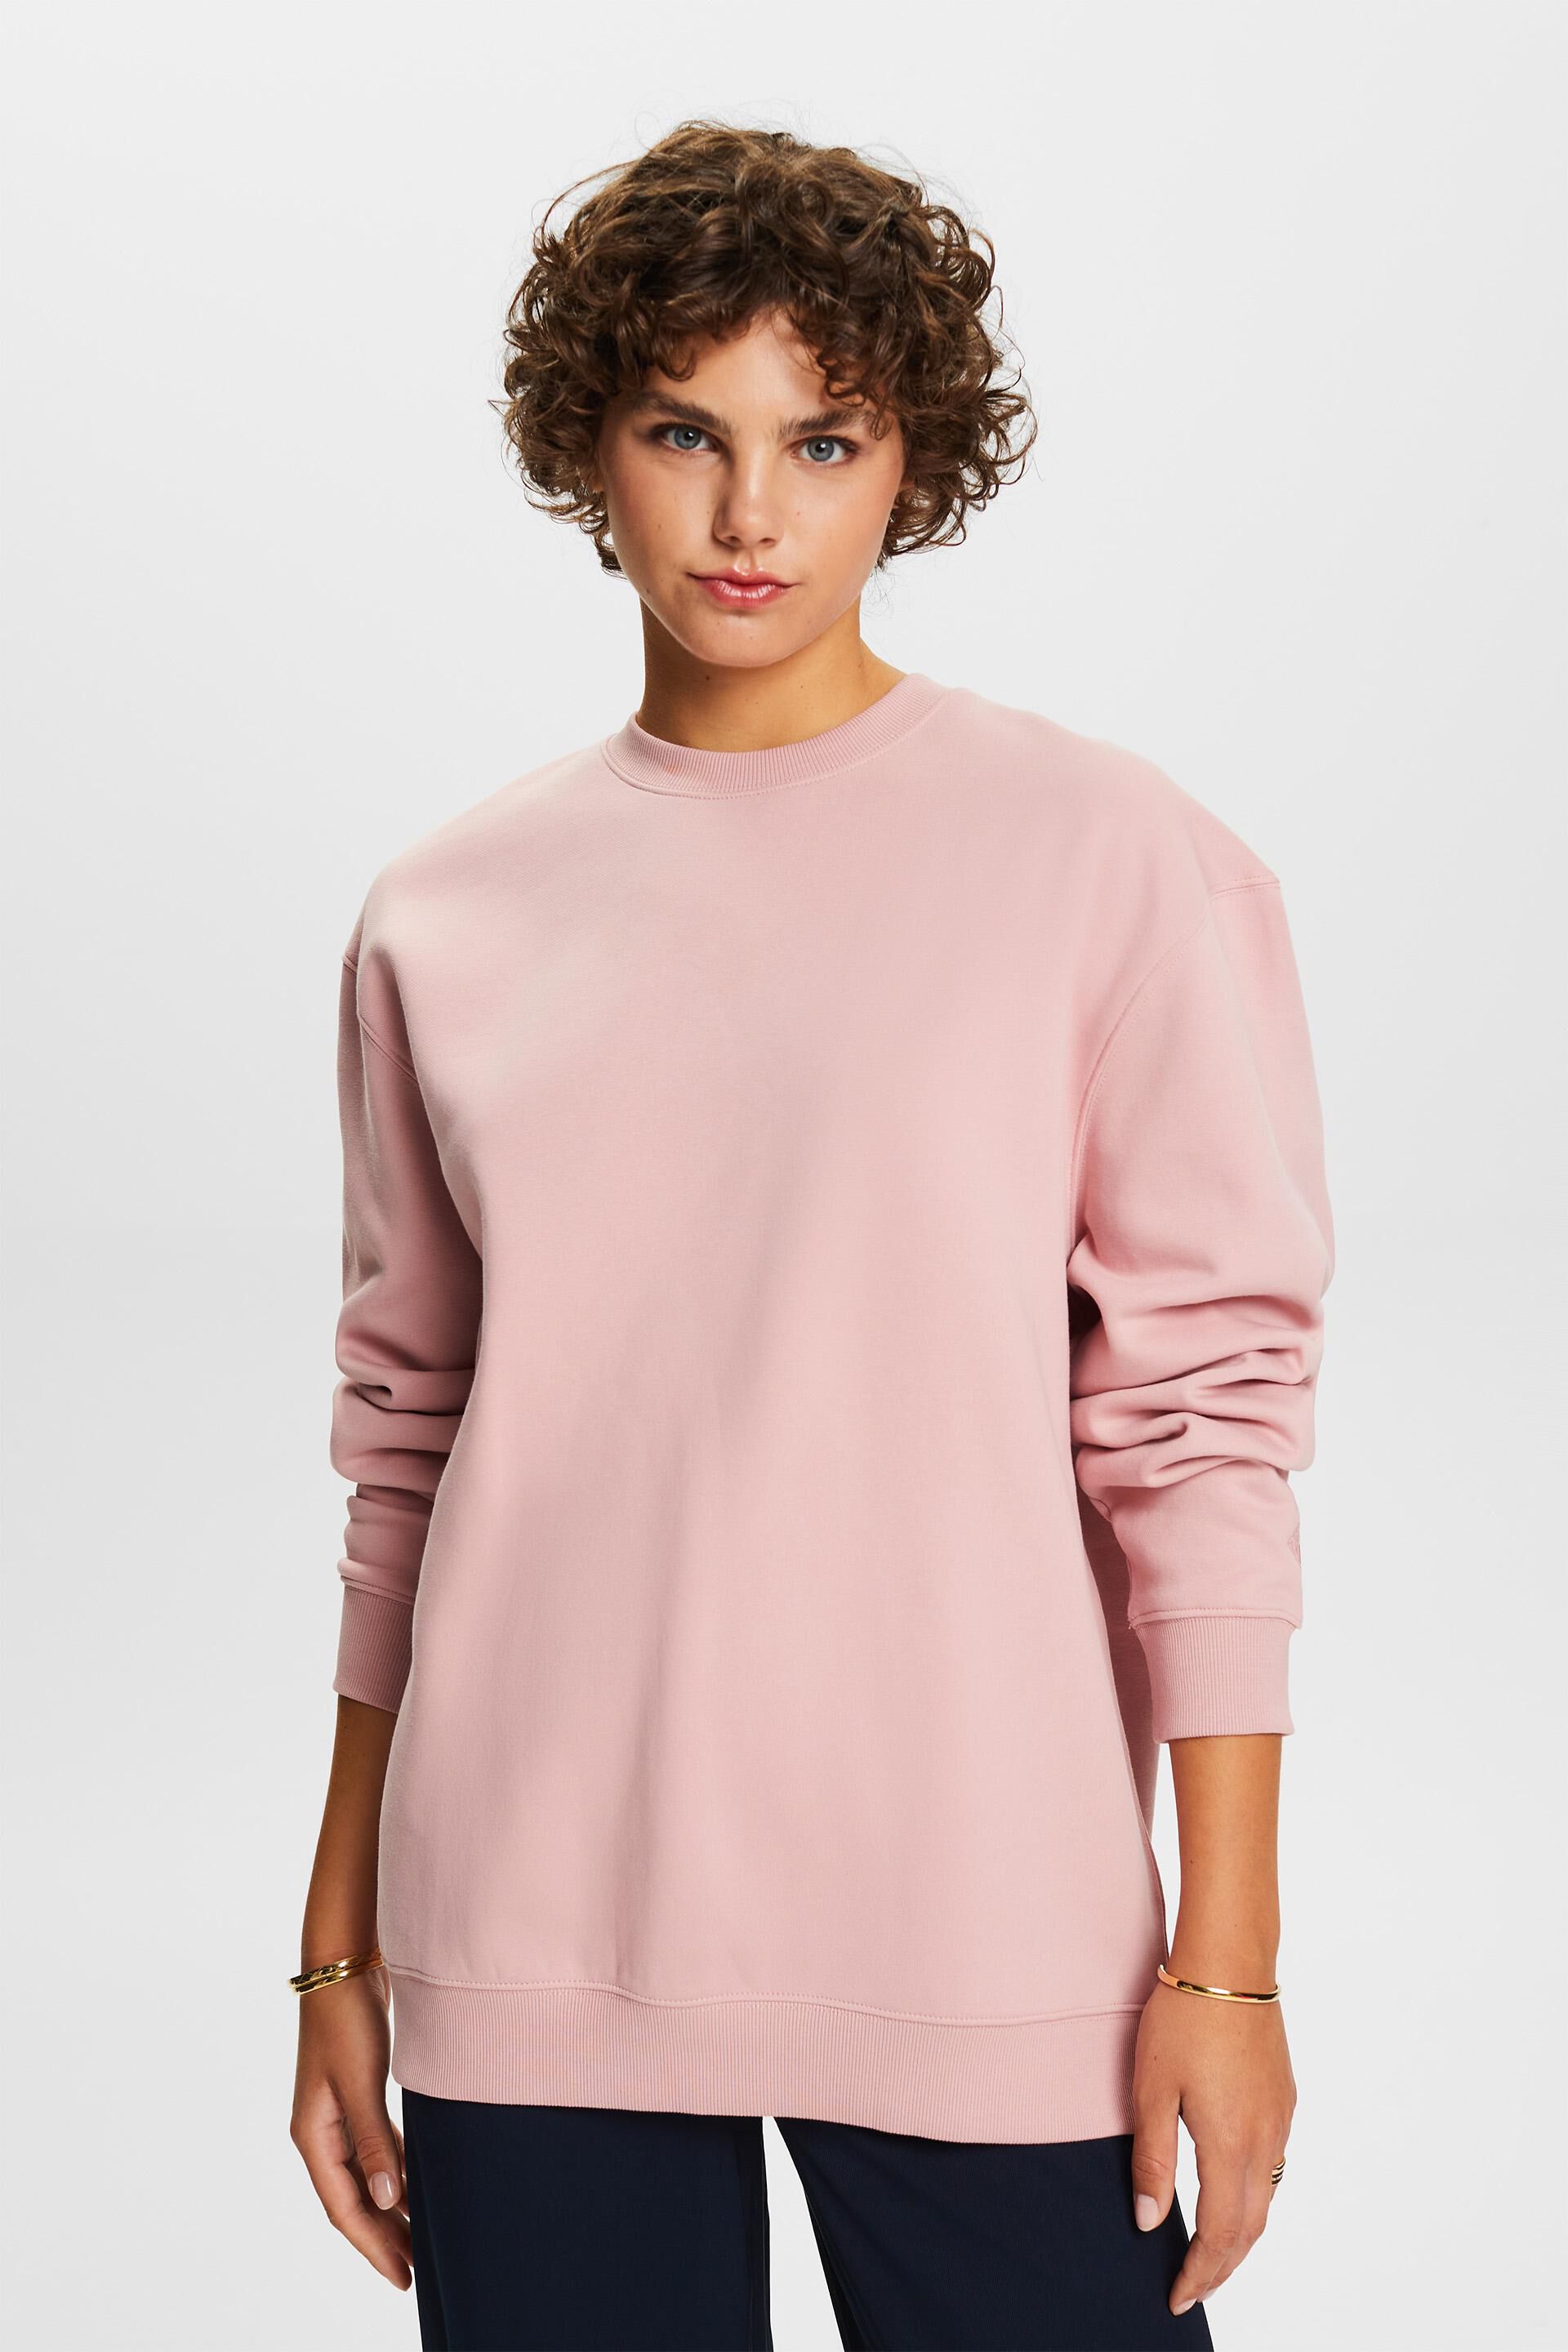 Esprit Sweatshirt Pullover Cotton Blend